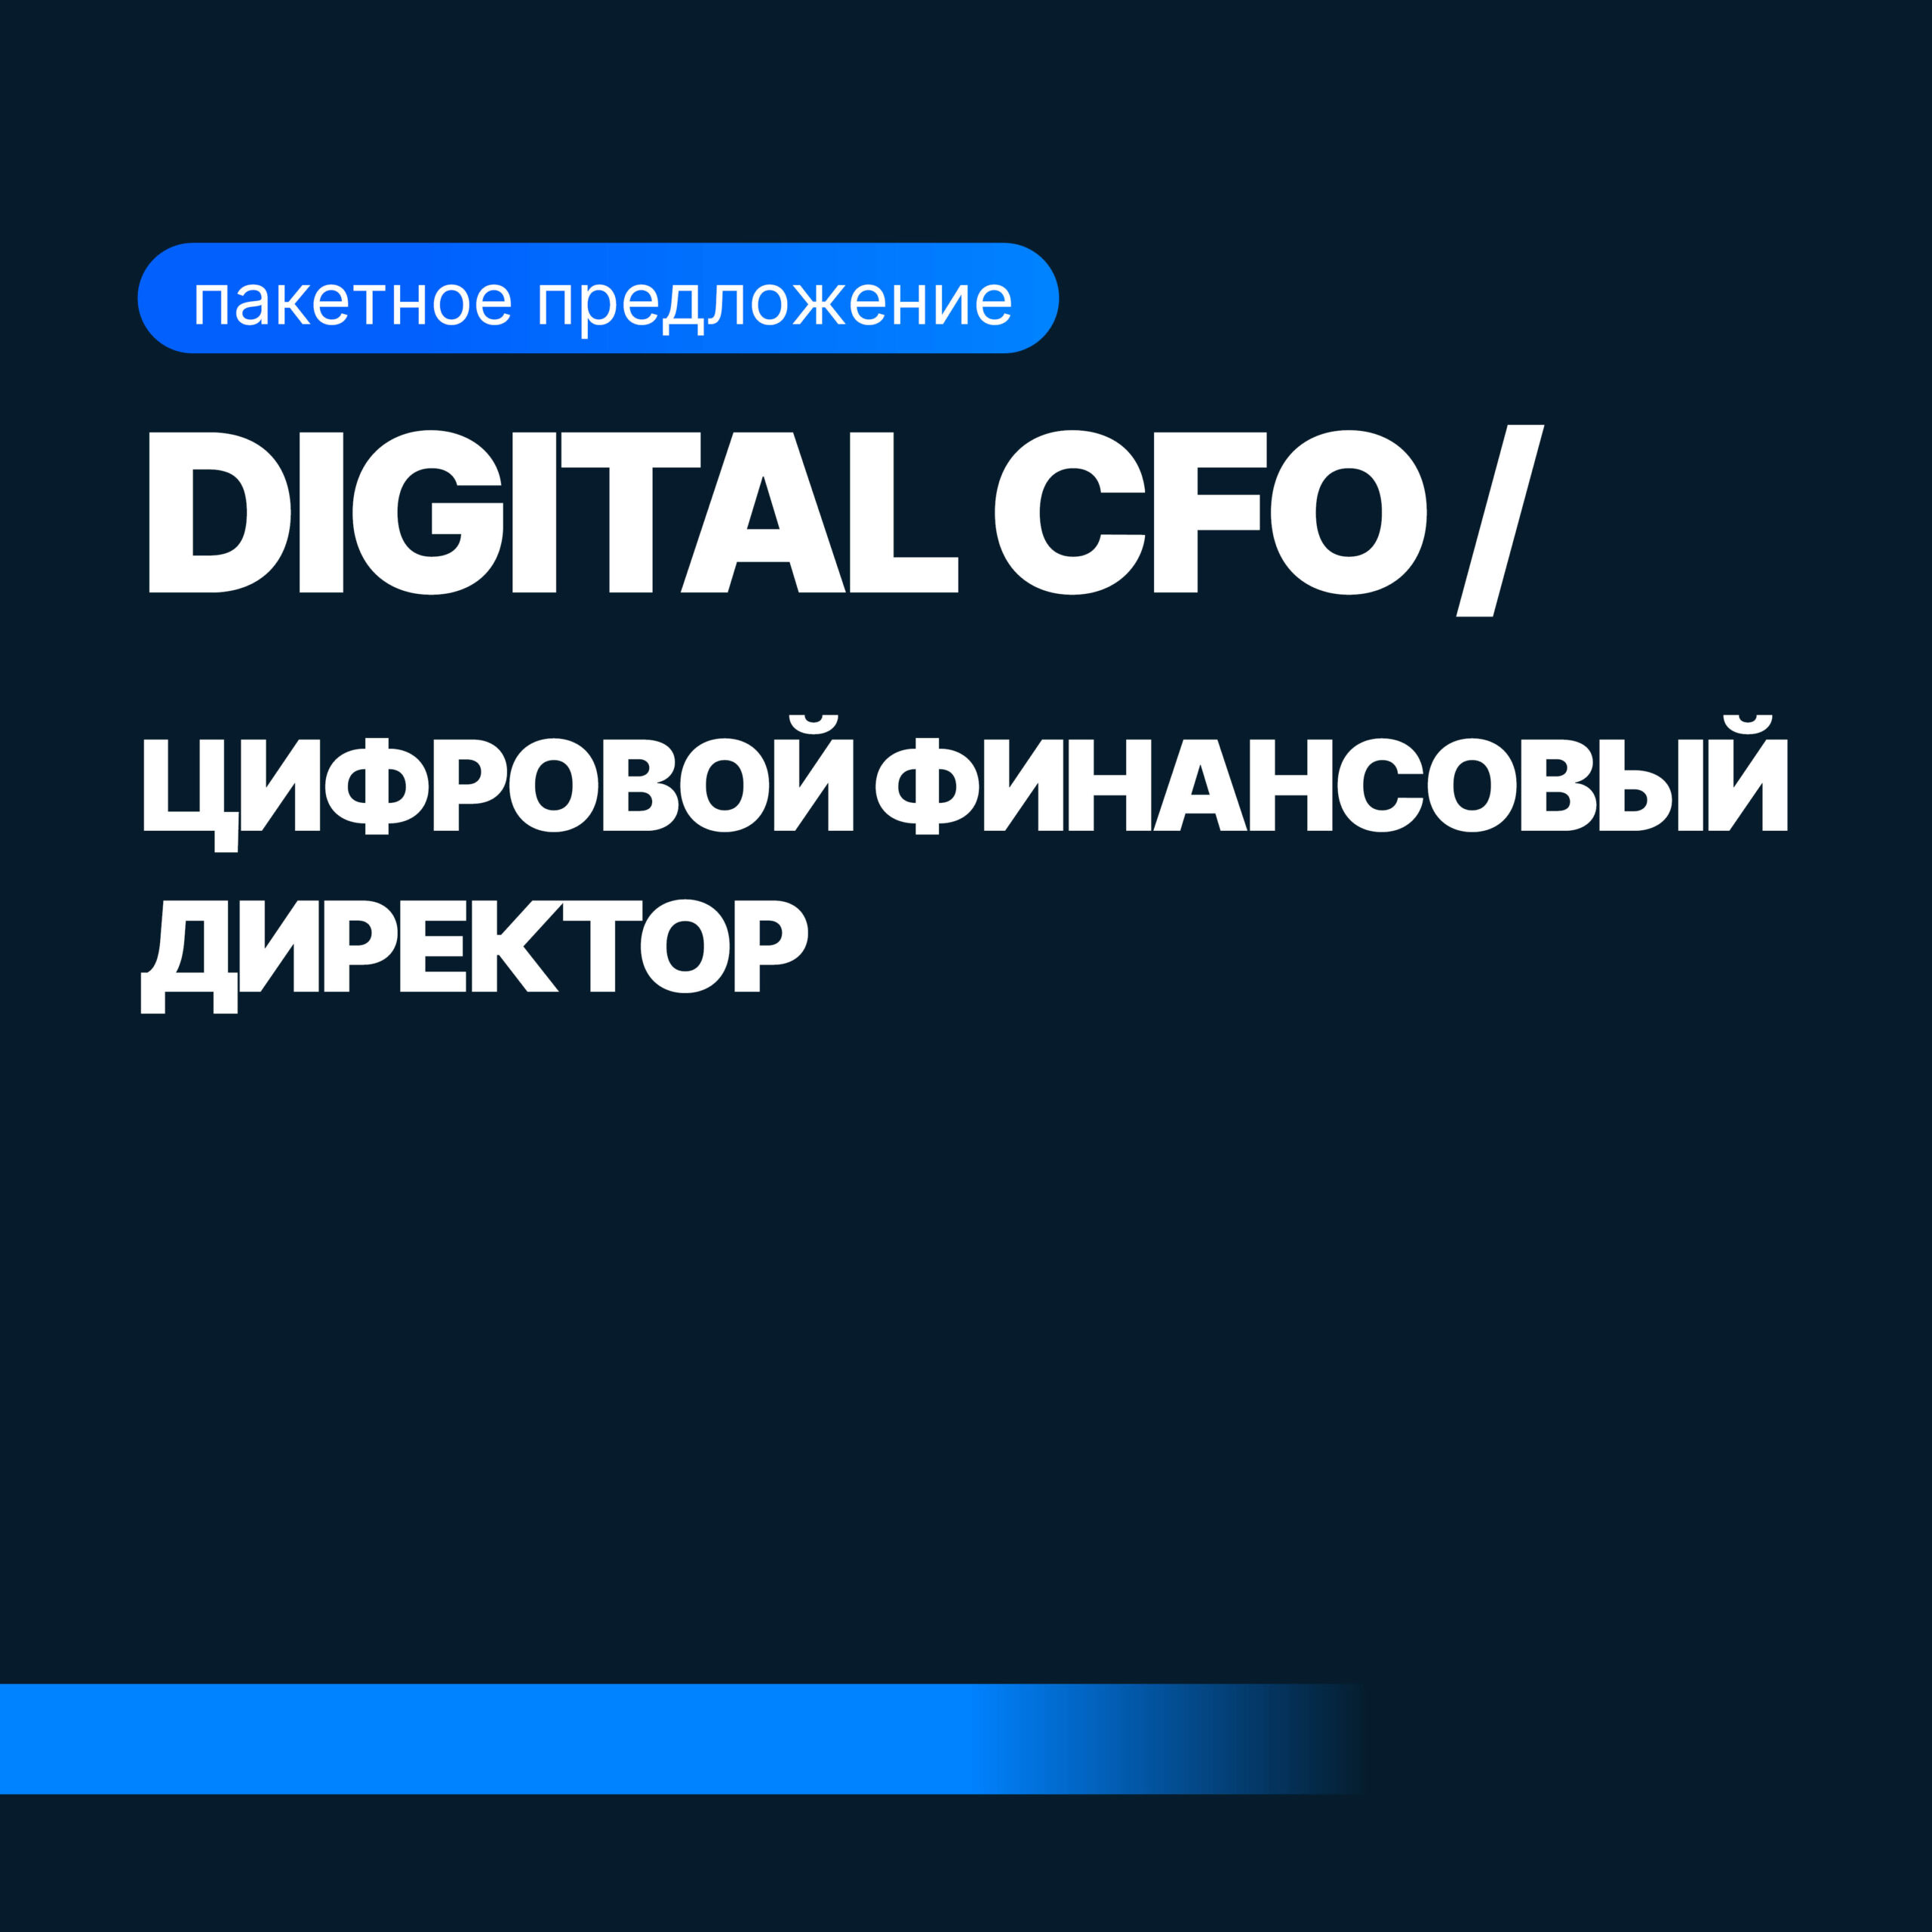 Digital CFO (Финансовый Директор + Бизнес-аналитик) финансовый аналитик